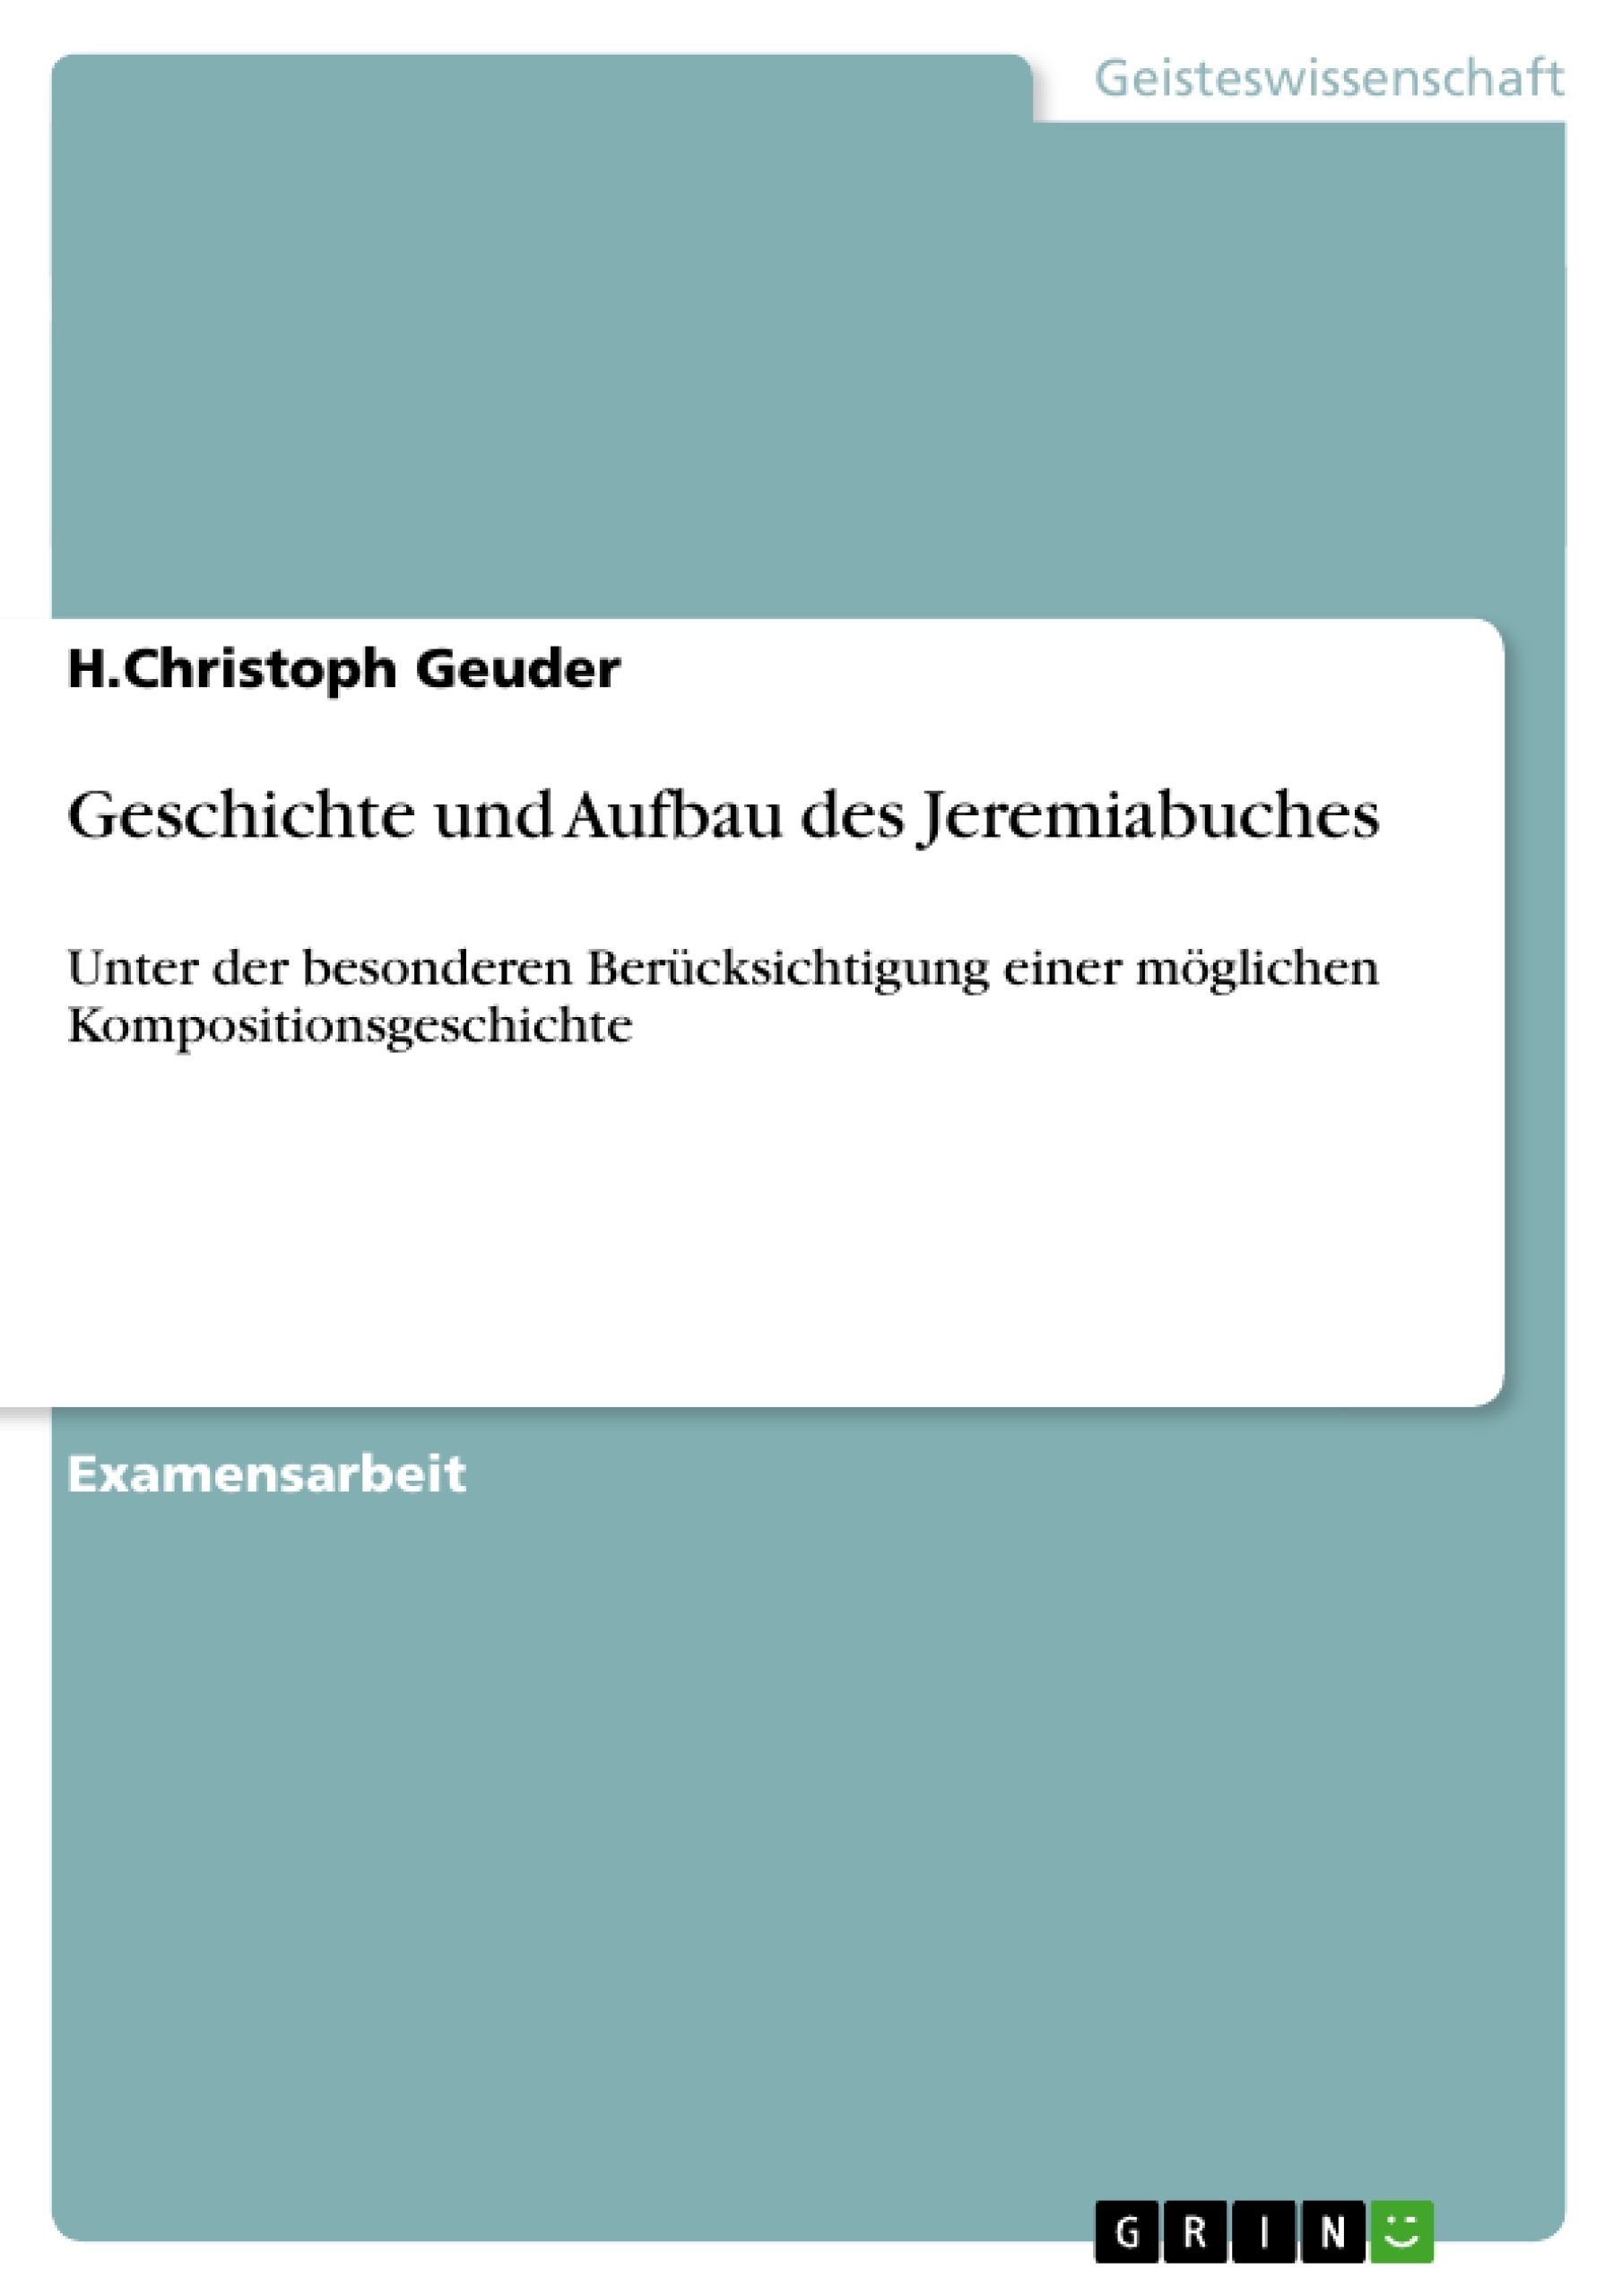 Title: Geschichte und Aufbau des Jeremiabuches